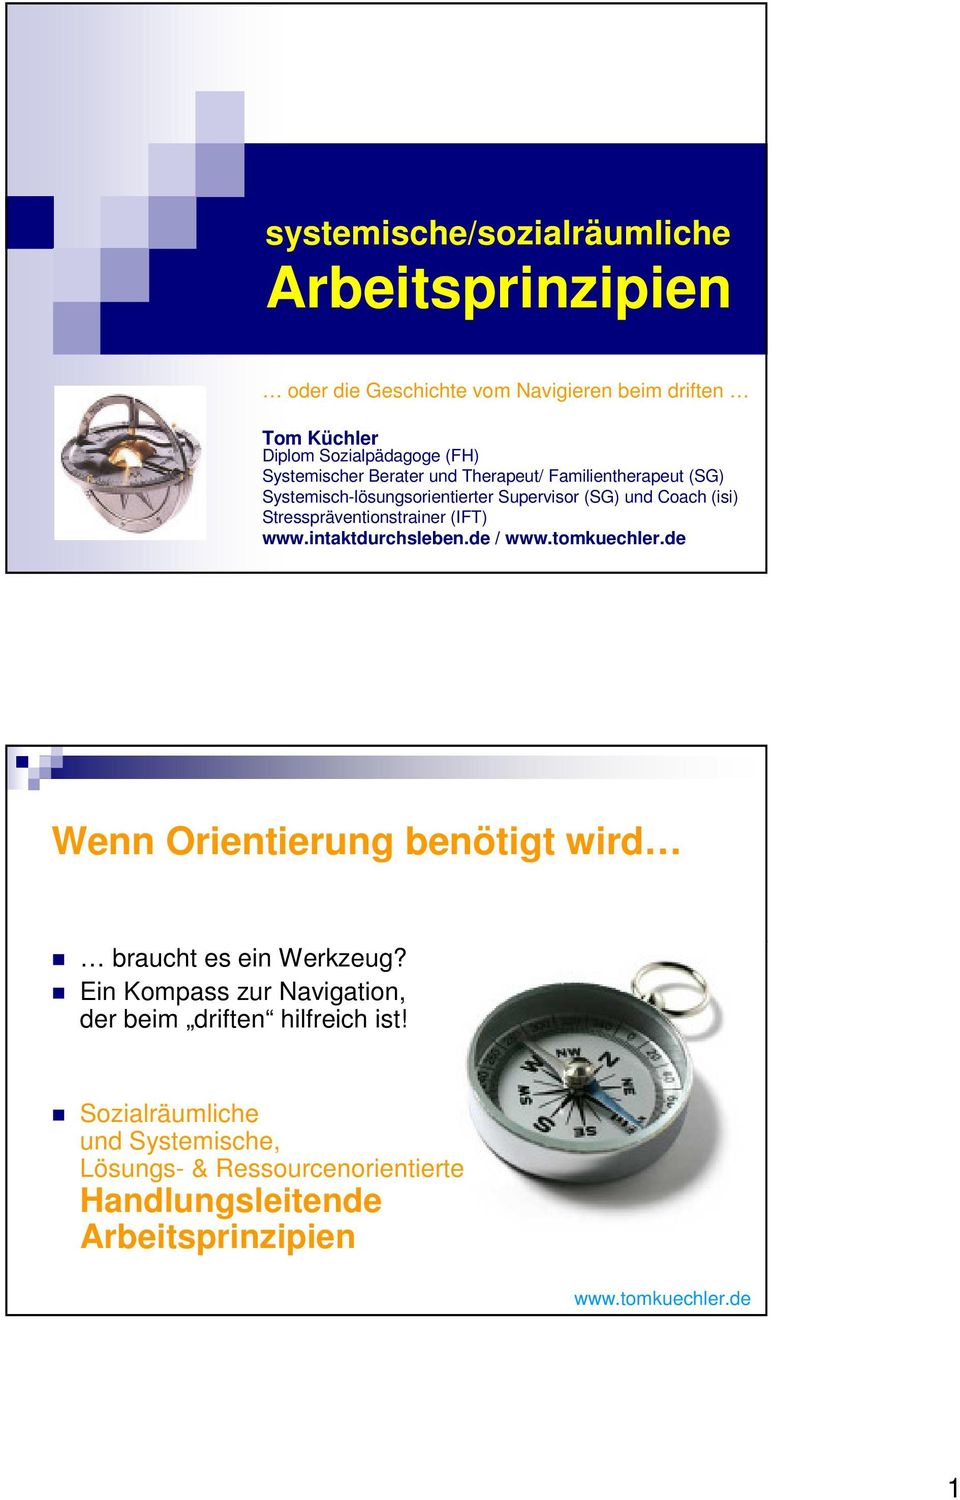 Stresspräventionstrainer (IFT) www.intaktdurchsleben.de / Wenn Orientierung benötigt wird braucht es ein Werkzeug?